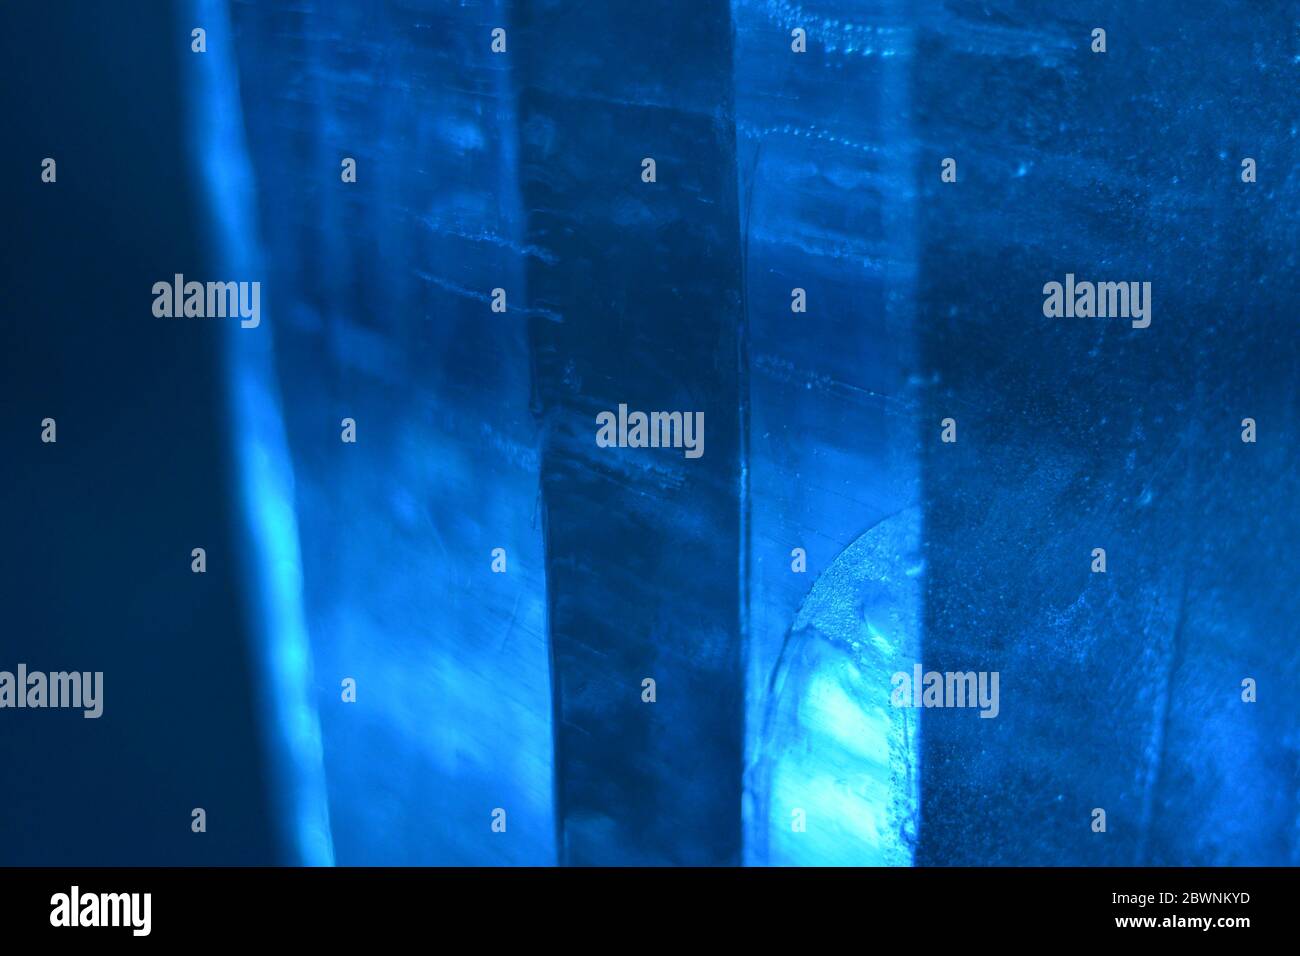 Des bulles sont piégées dans ces colonnes de glace bleue qui nagent et déforment la mise au point pour donner une photographie de texture d'arrière-plan monochromatique. Banque D'Images